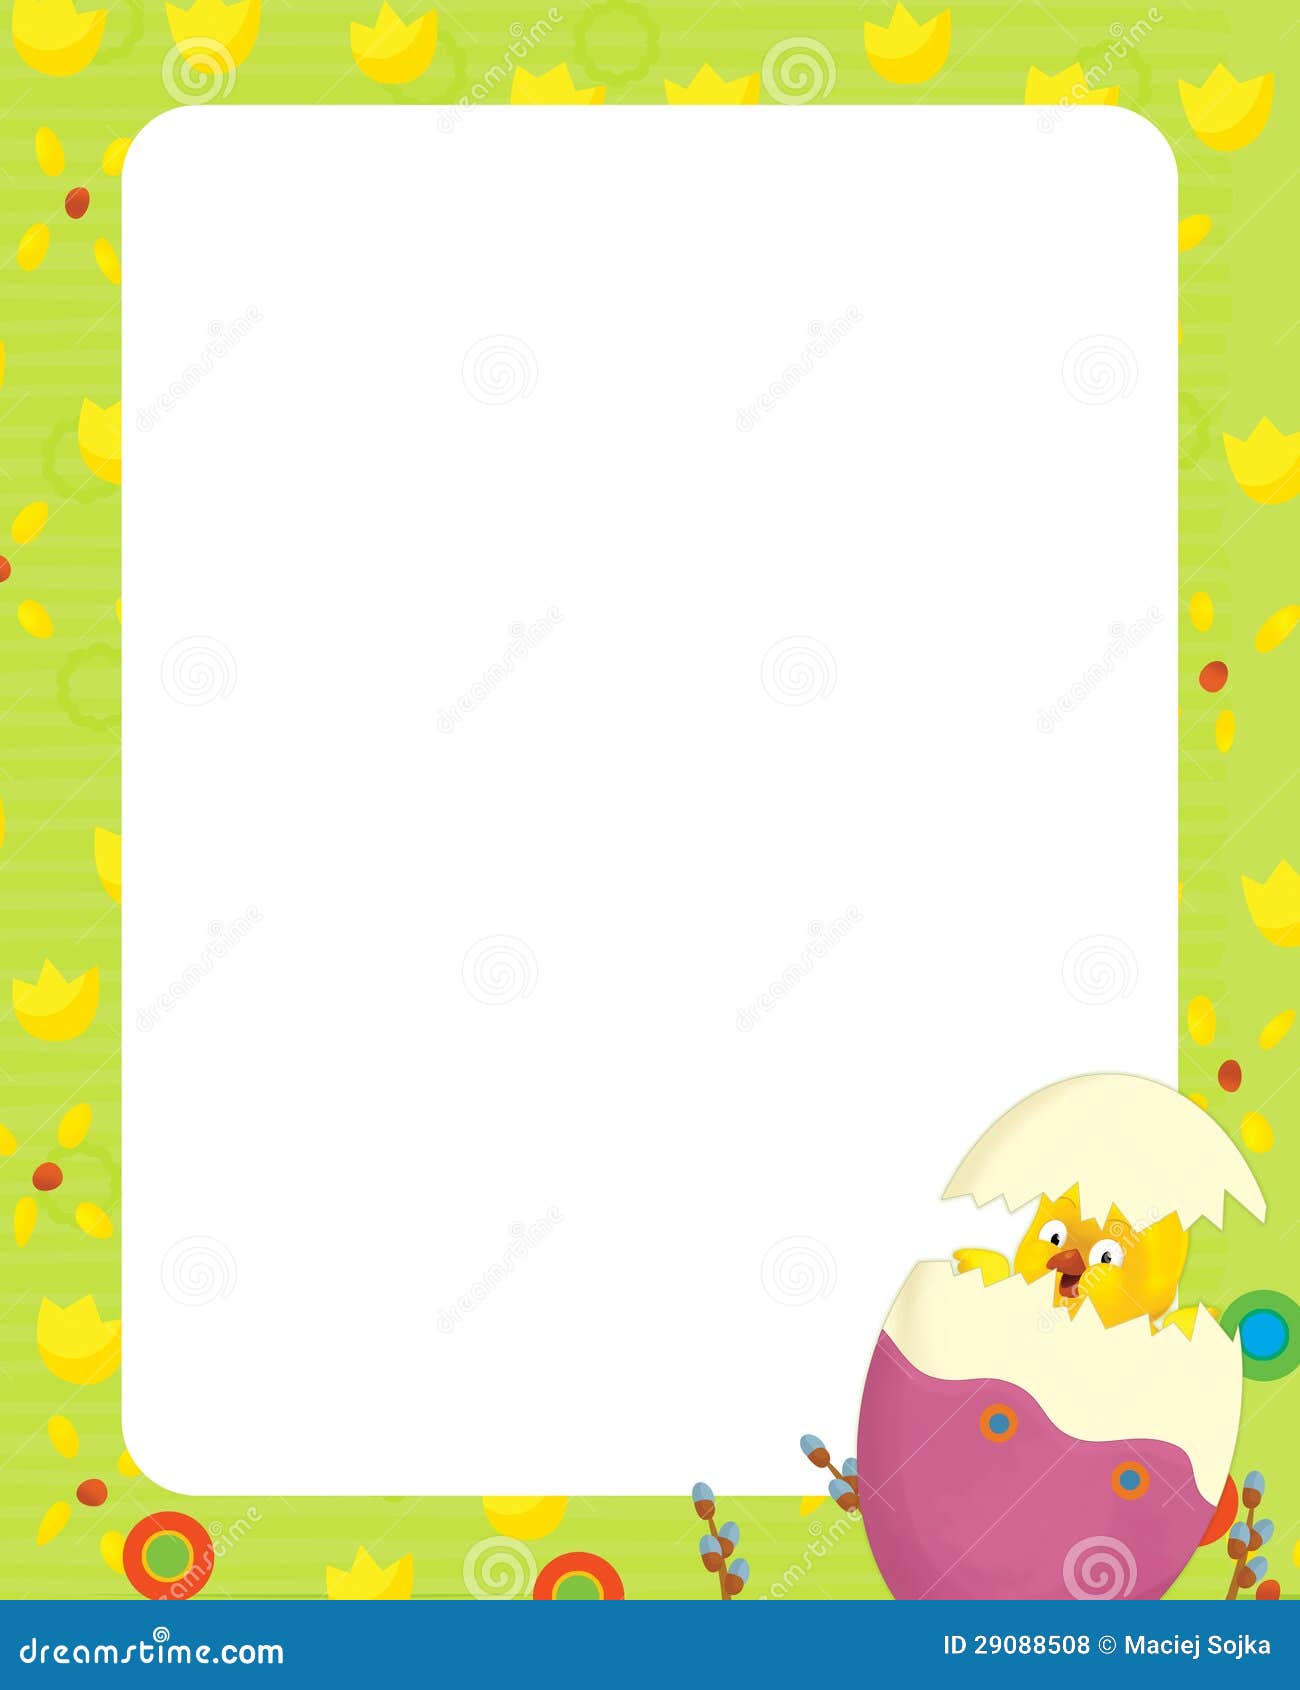 The Happy Easter Frame - Illustration For The Children 